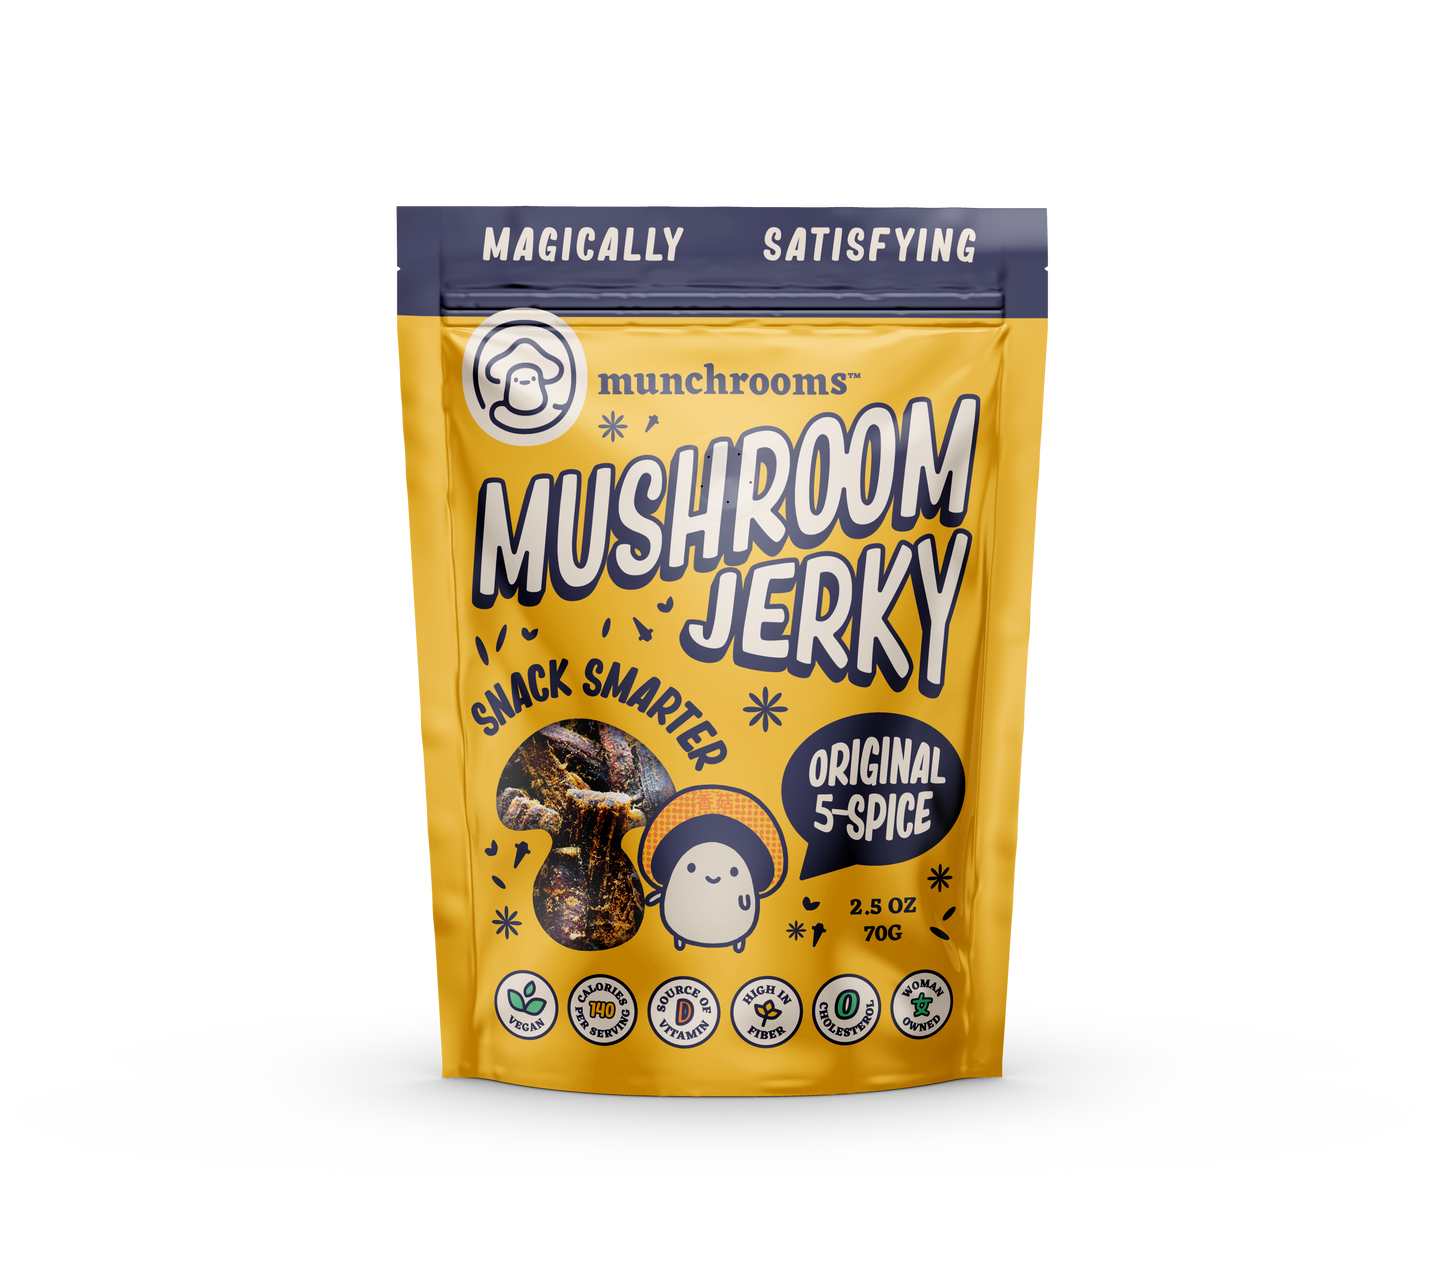 Munchrooms | Mushroom Jerky Original 5-Spice